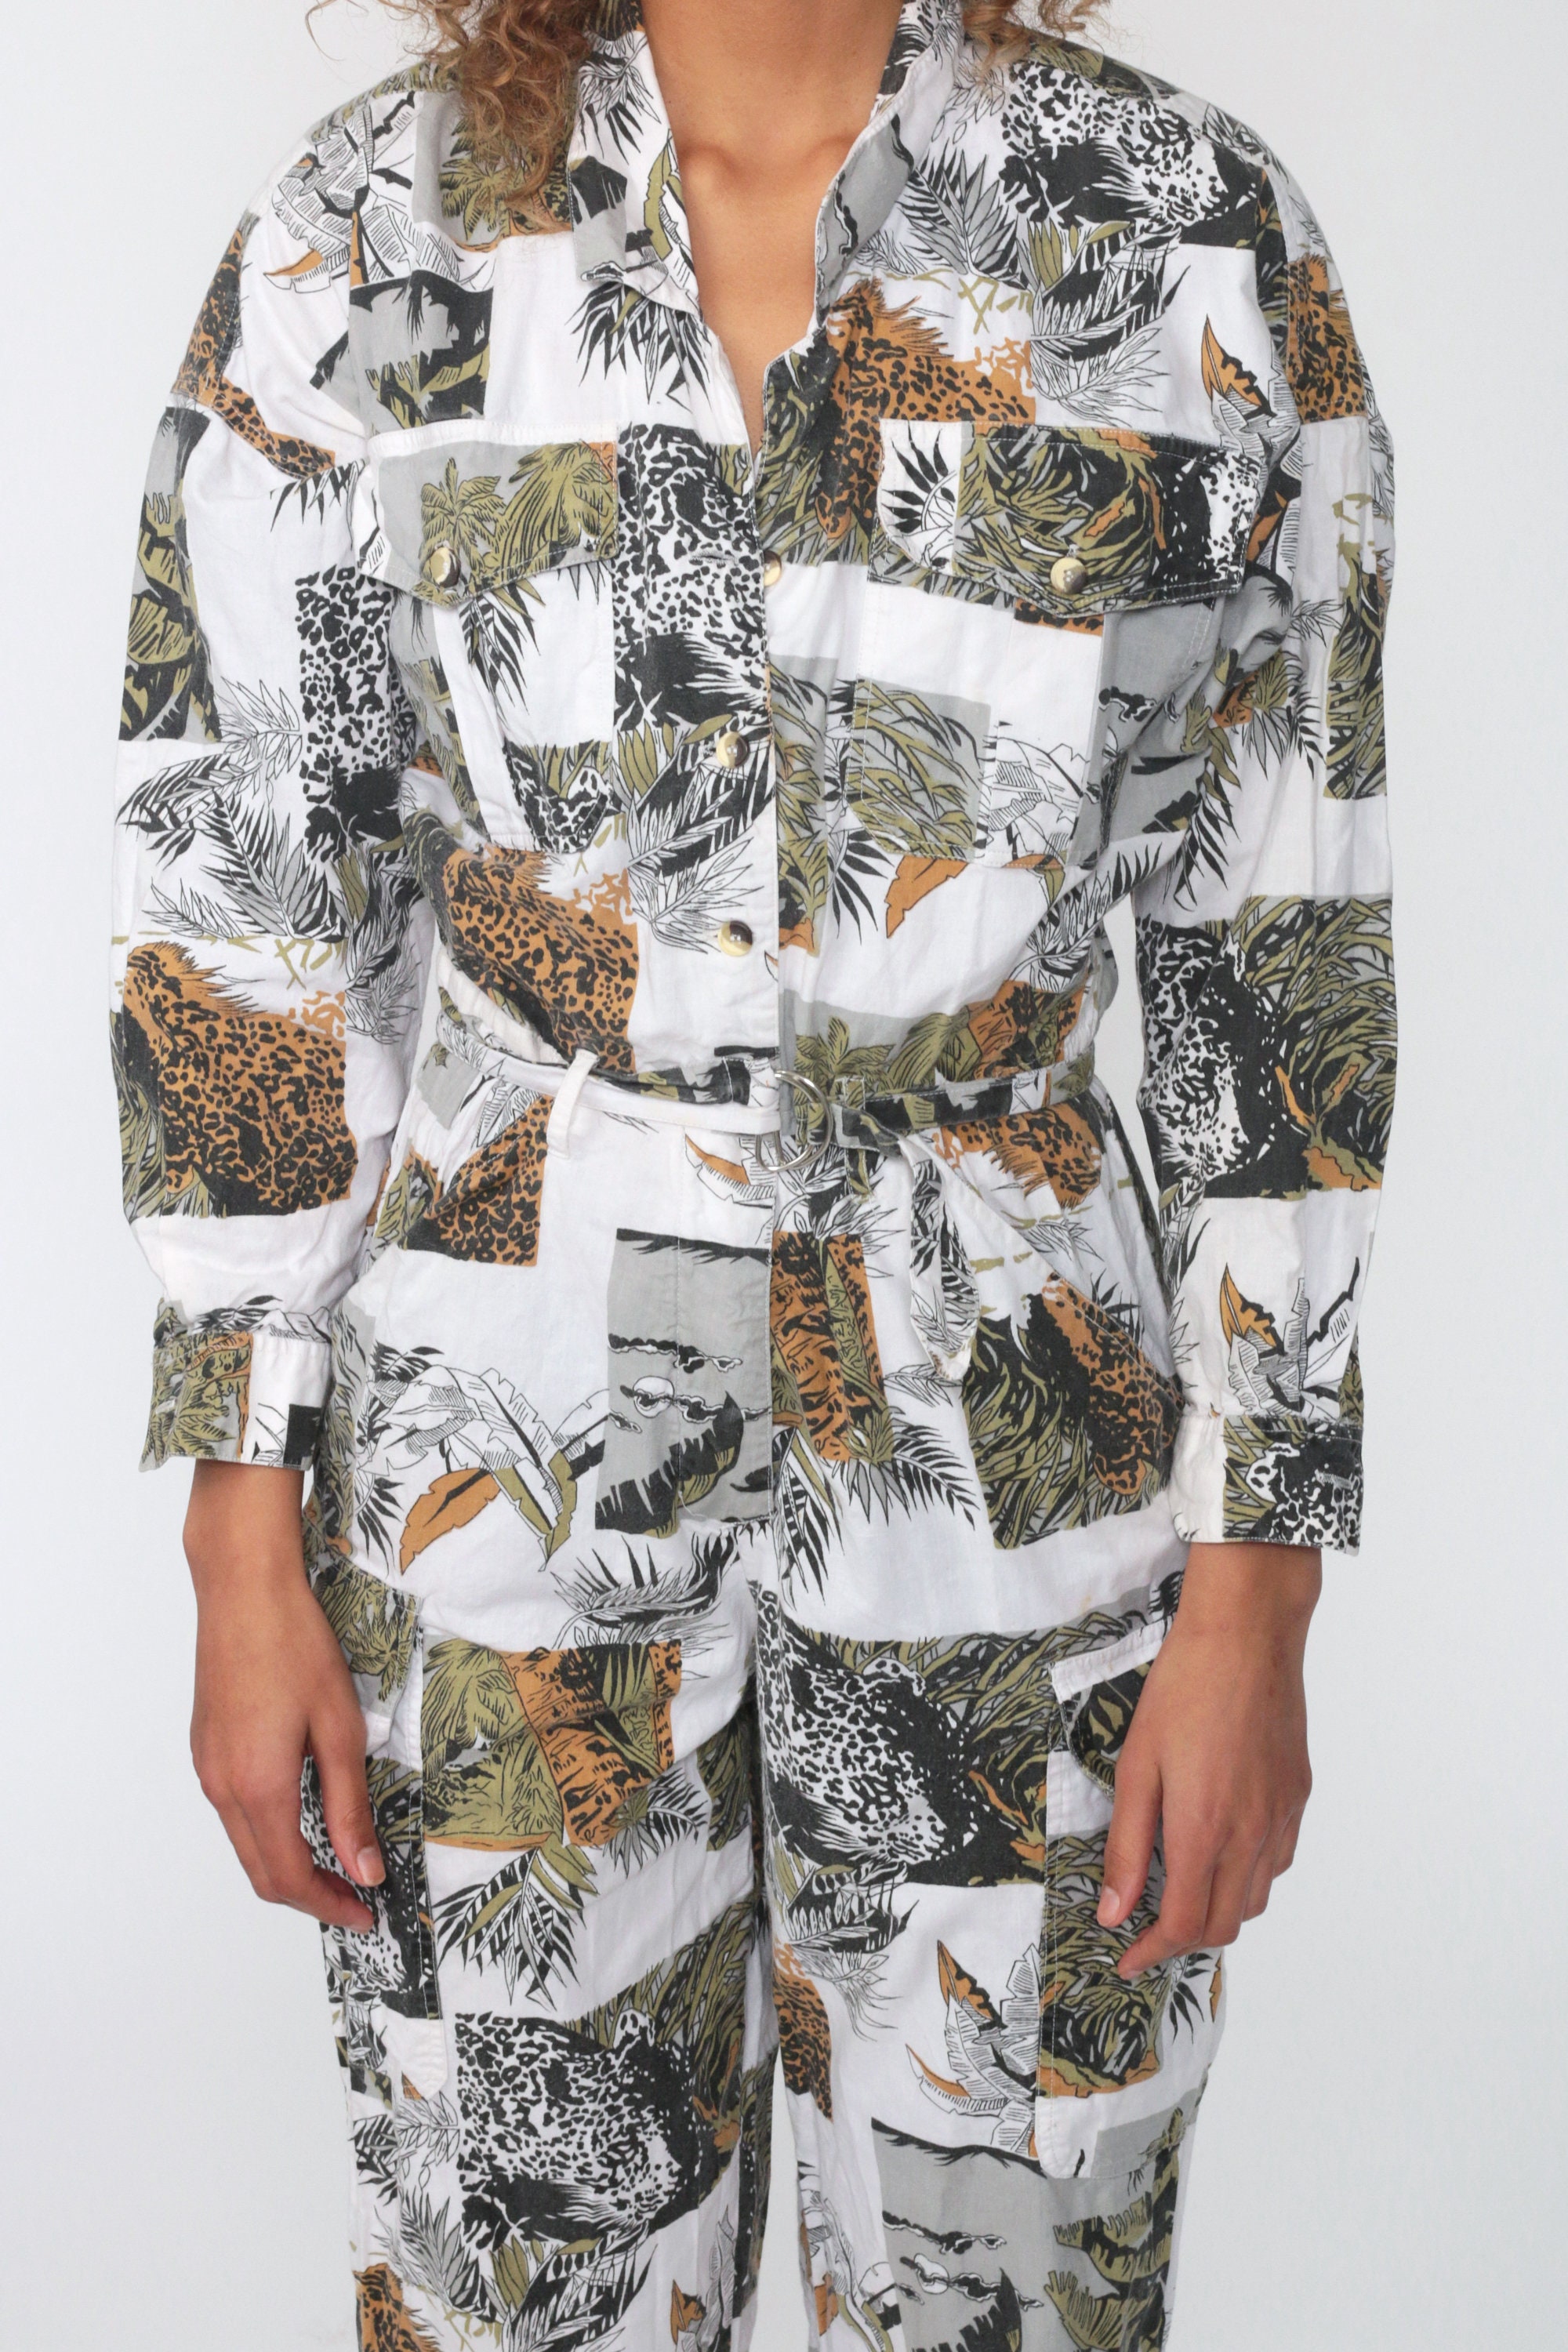 80s safari clothing